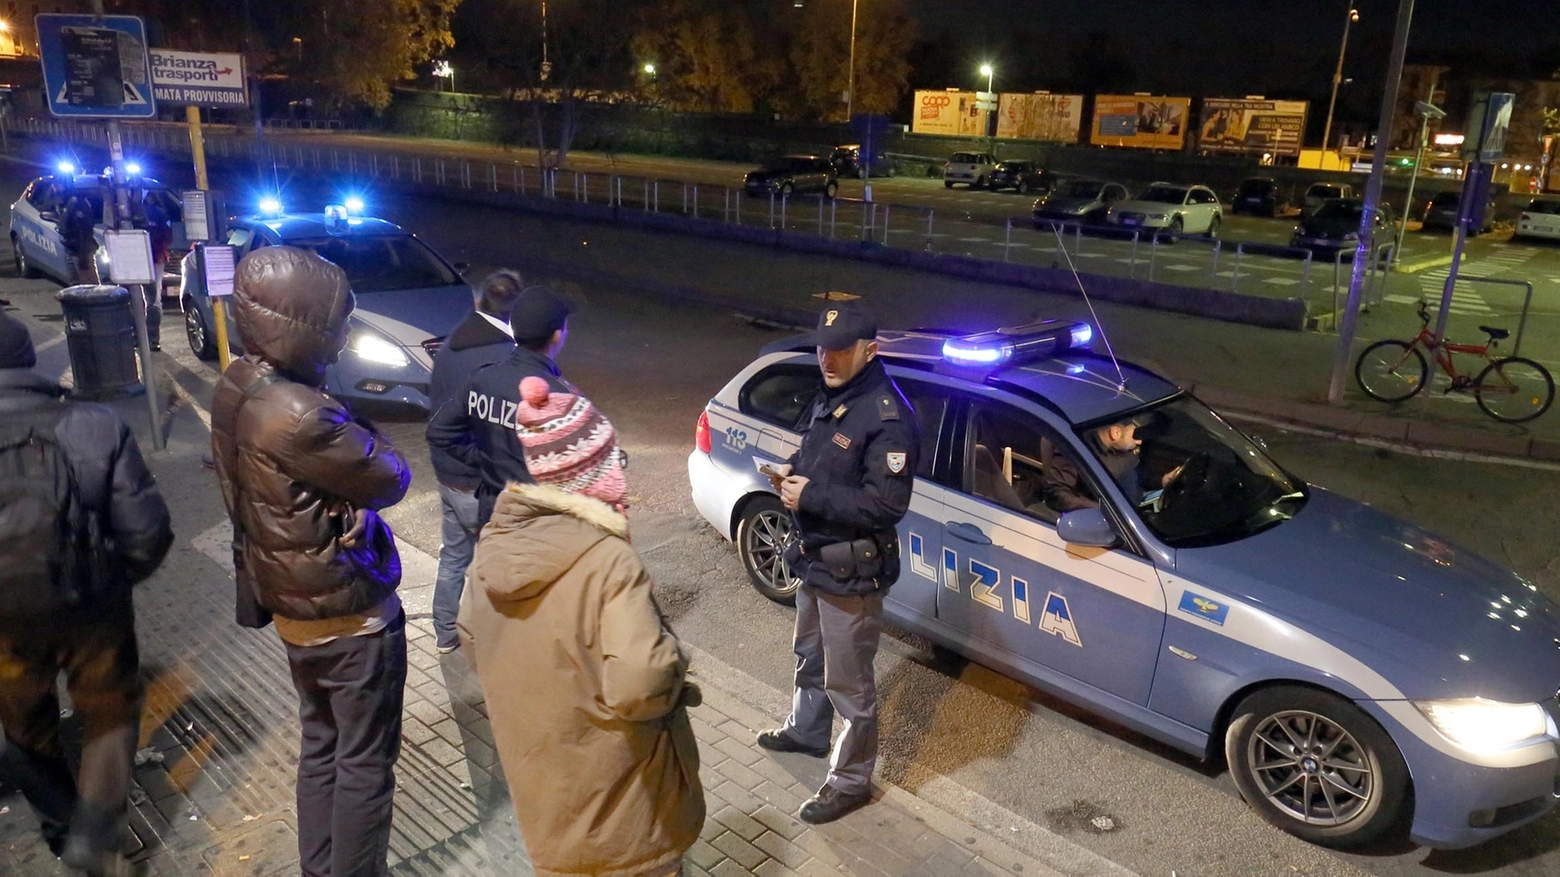 Polizia in piazza Castello a Monza